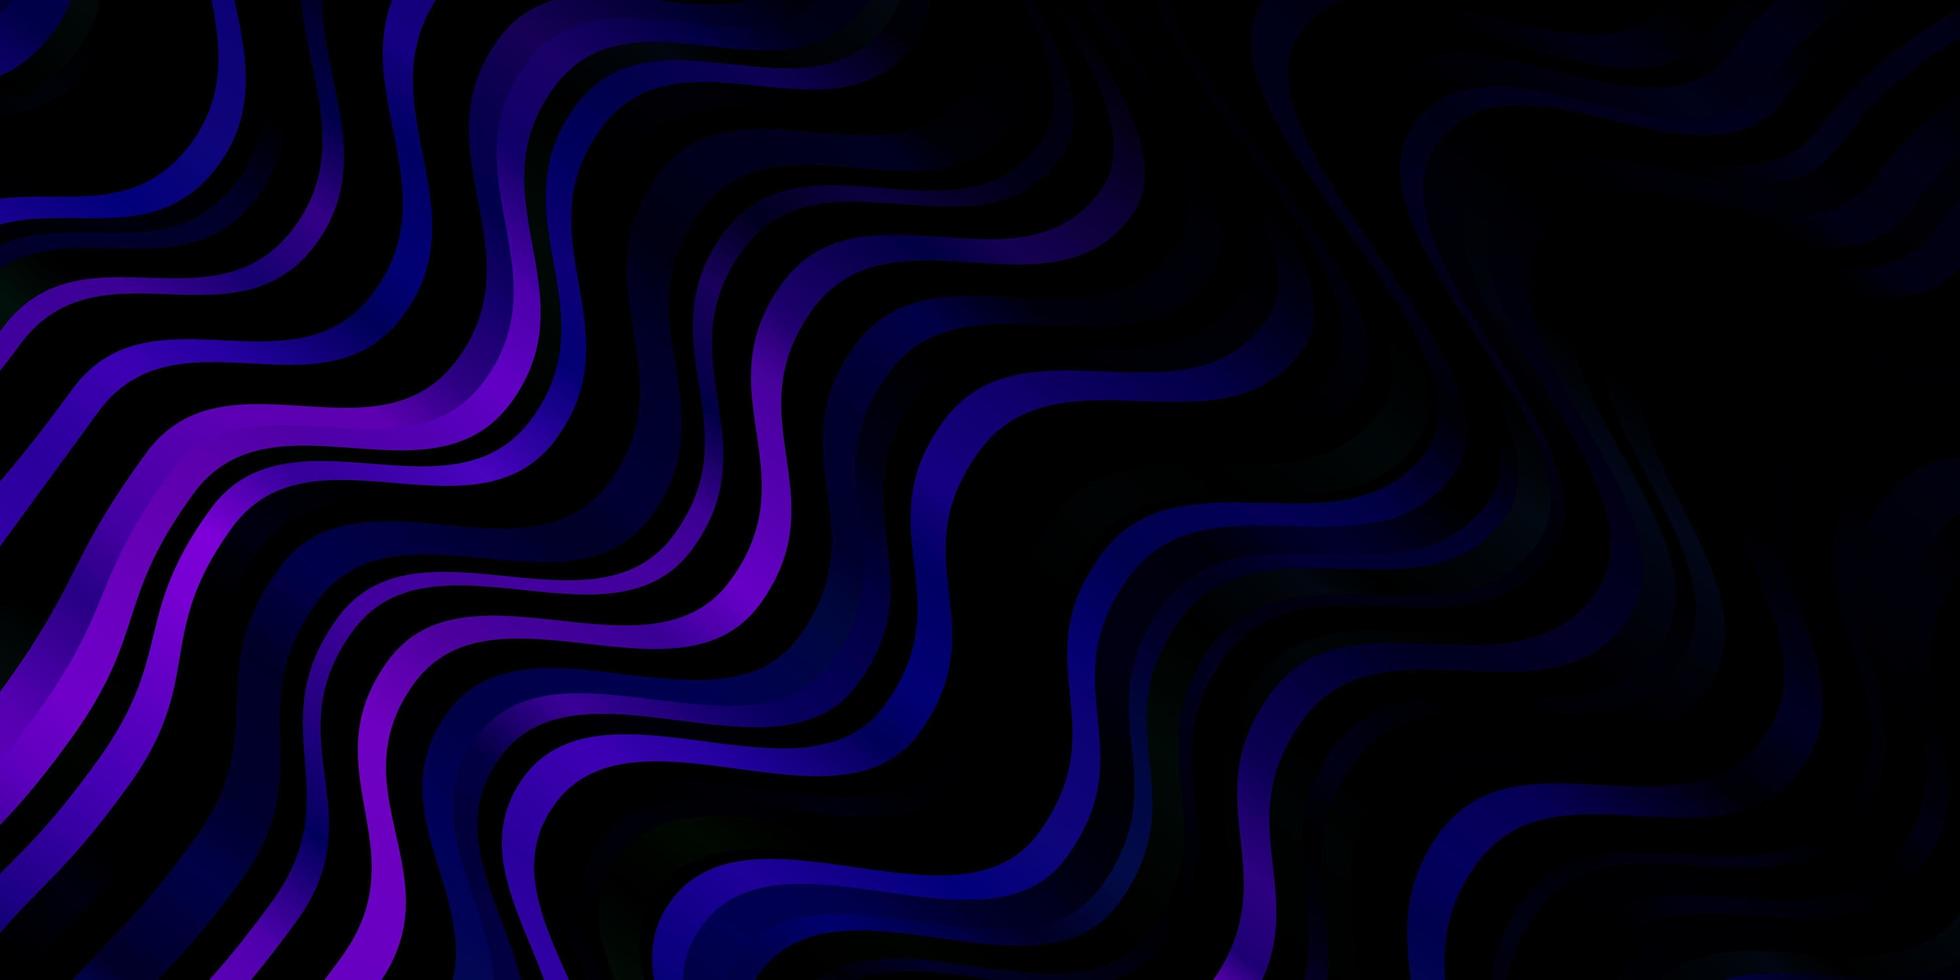 mörkrosa, blå vektormall med böjda linjer. vektor